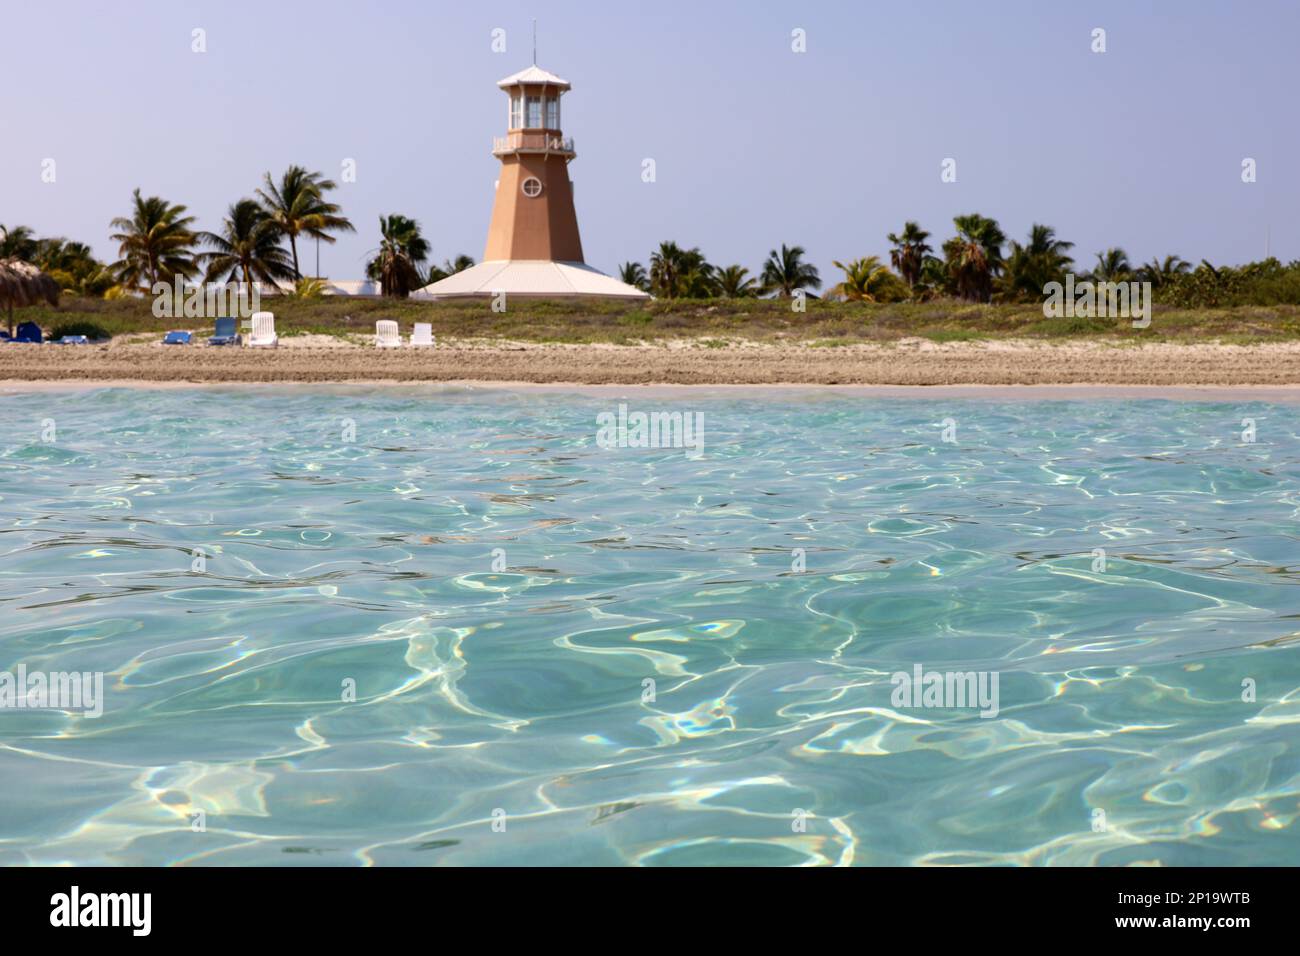 Vue imprenable de la surface de l'eau à la plage tropicale avec phare, chaises longues et palmiers à noix de coco. Station balnéaire sur l'île des Caraïbes Banque D'Images